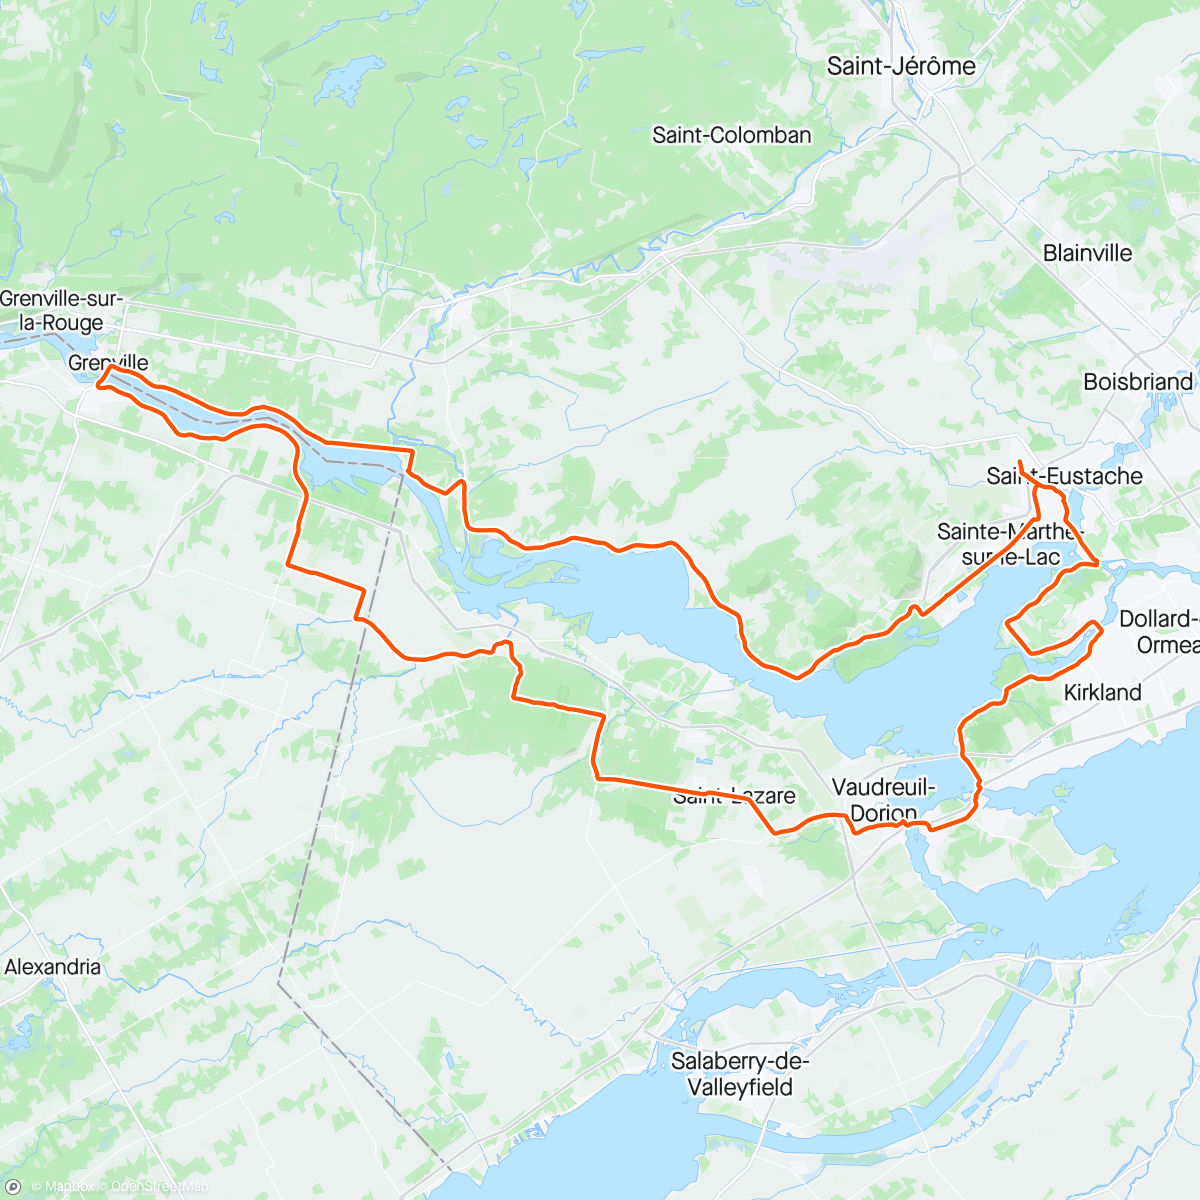 Mapa da atividade, Tournée vers l'ouest pour profiter des meilleures routes côté Ontarien #NeverFinished #LongHaul